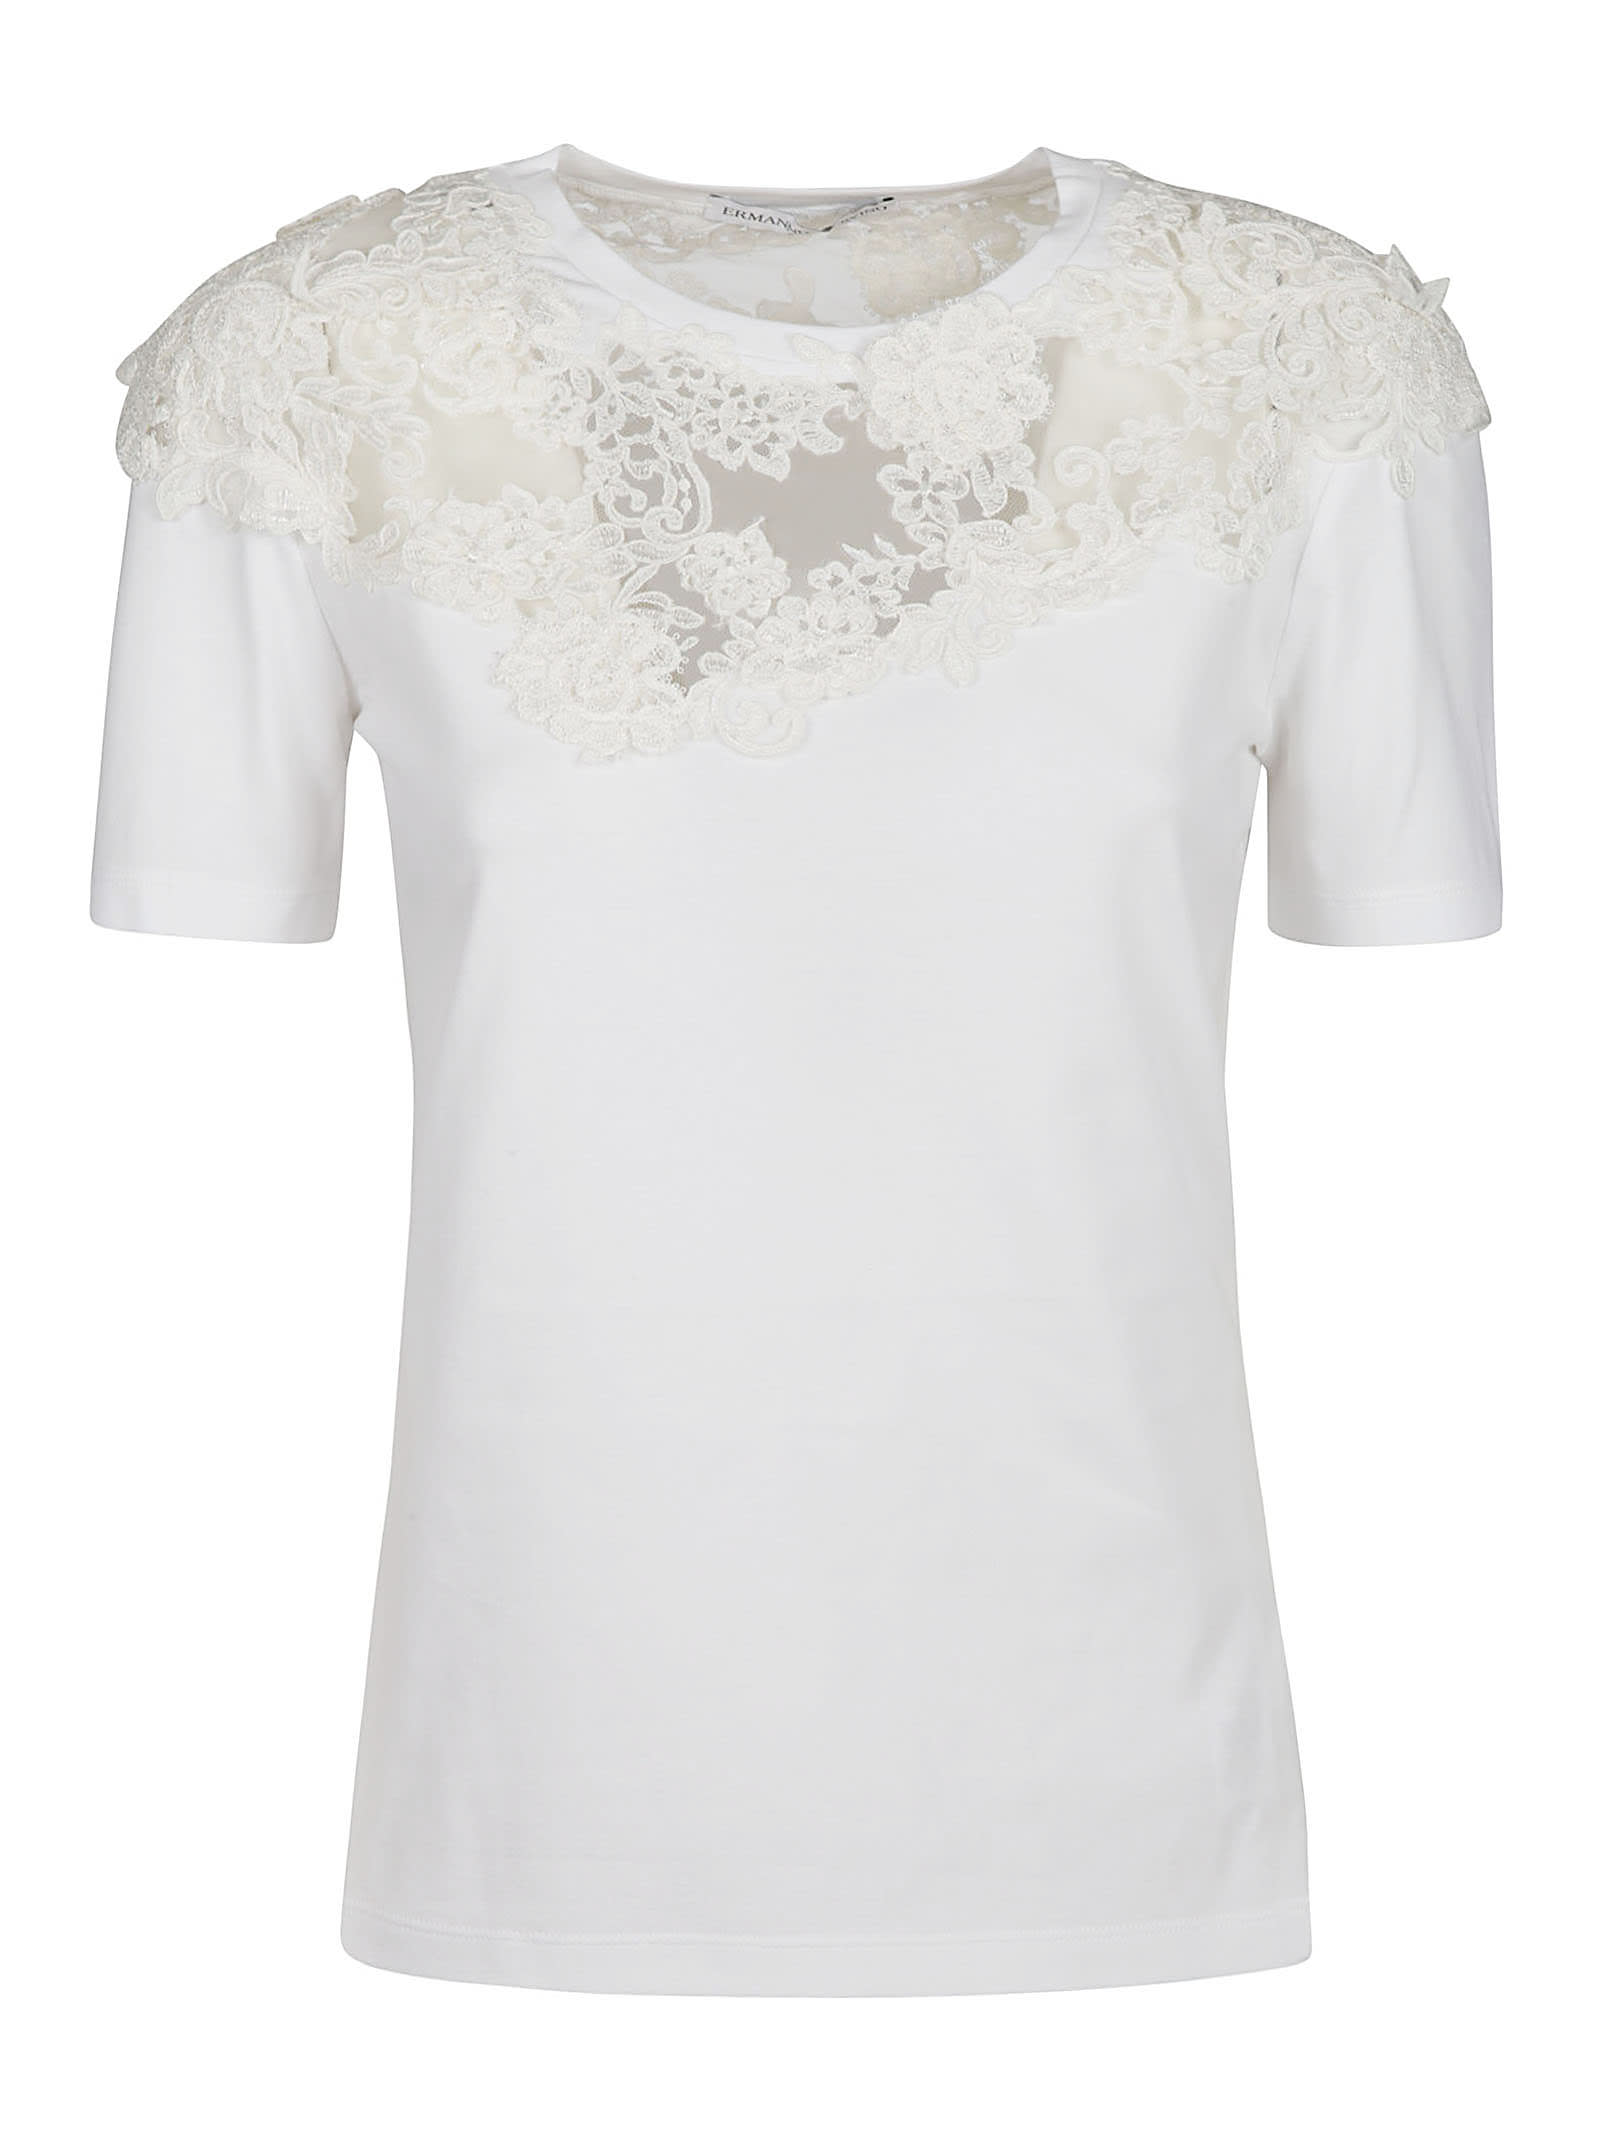 Ermanno Scervino Lace Floral Applique T-shirt